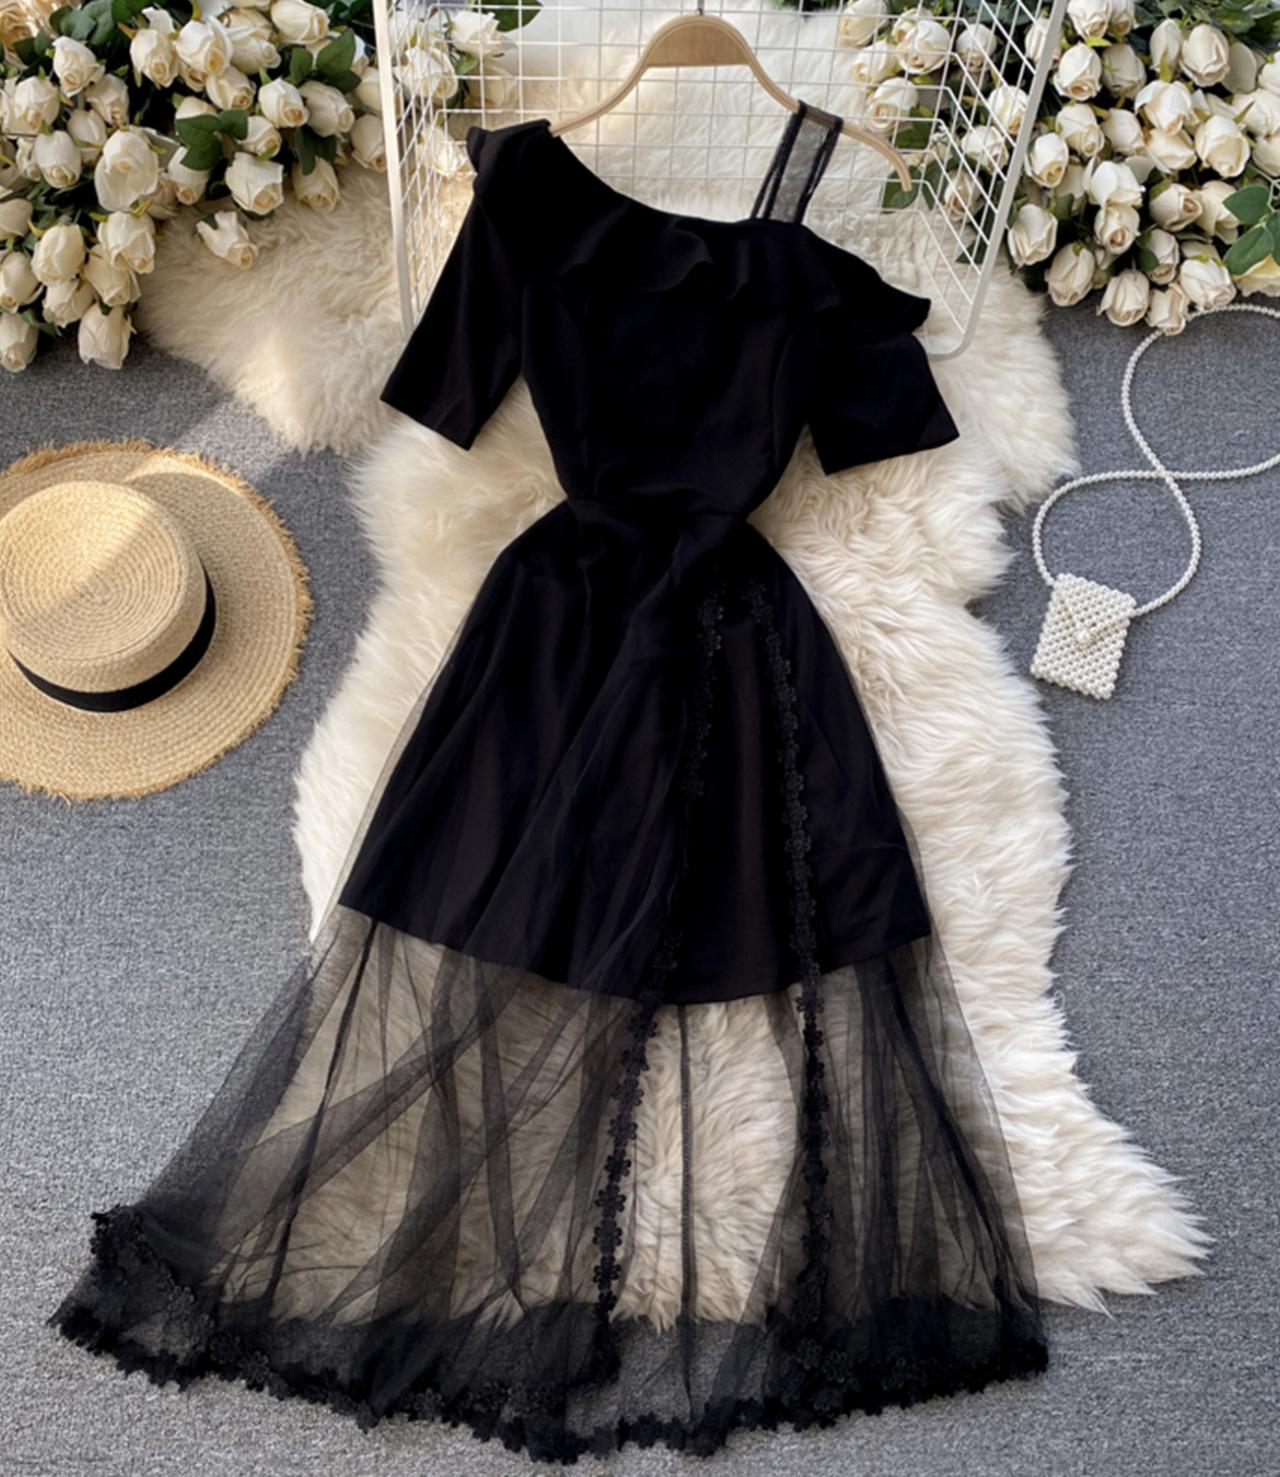 Schwarzes Kleid mit einer Schulter Schwarzes Spitzenkleid 785